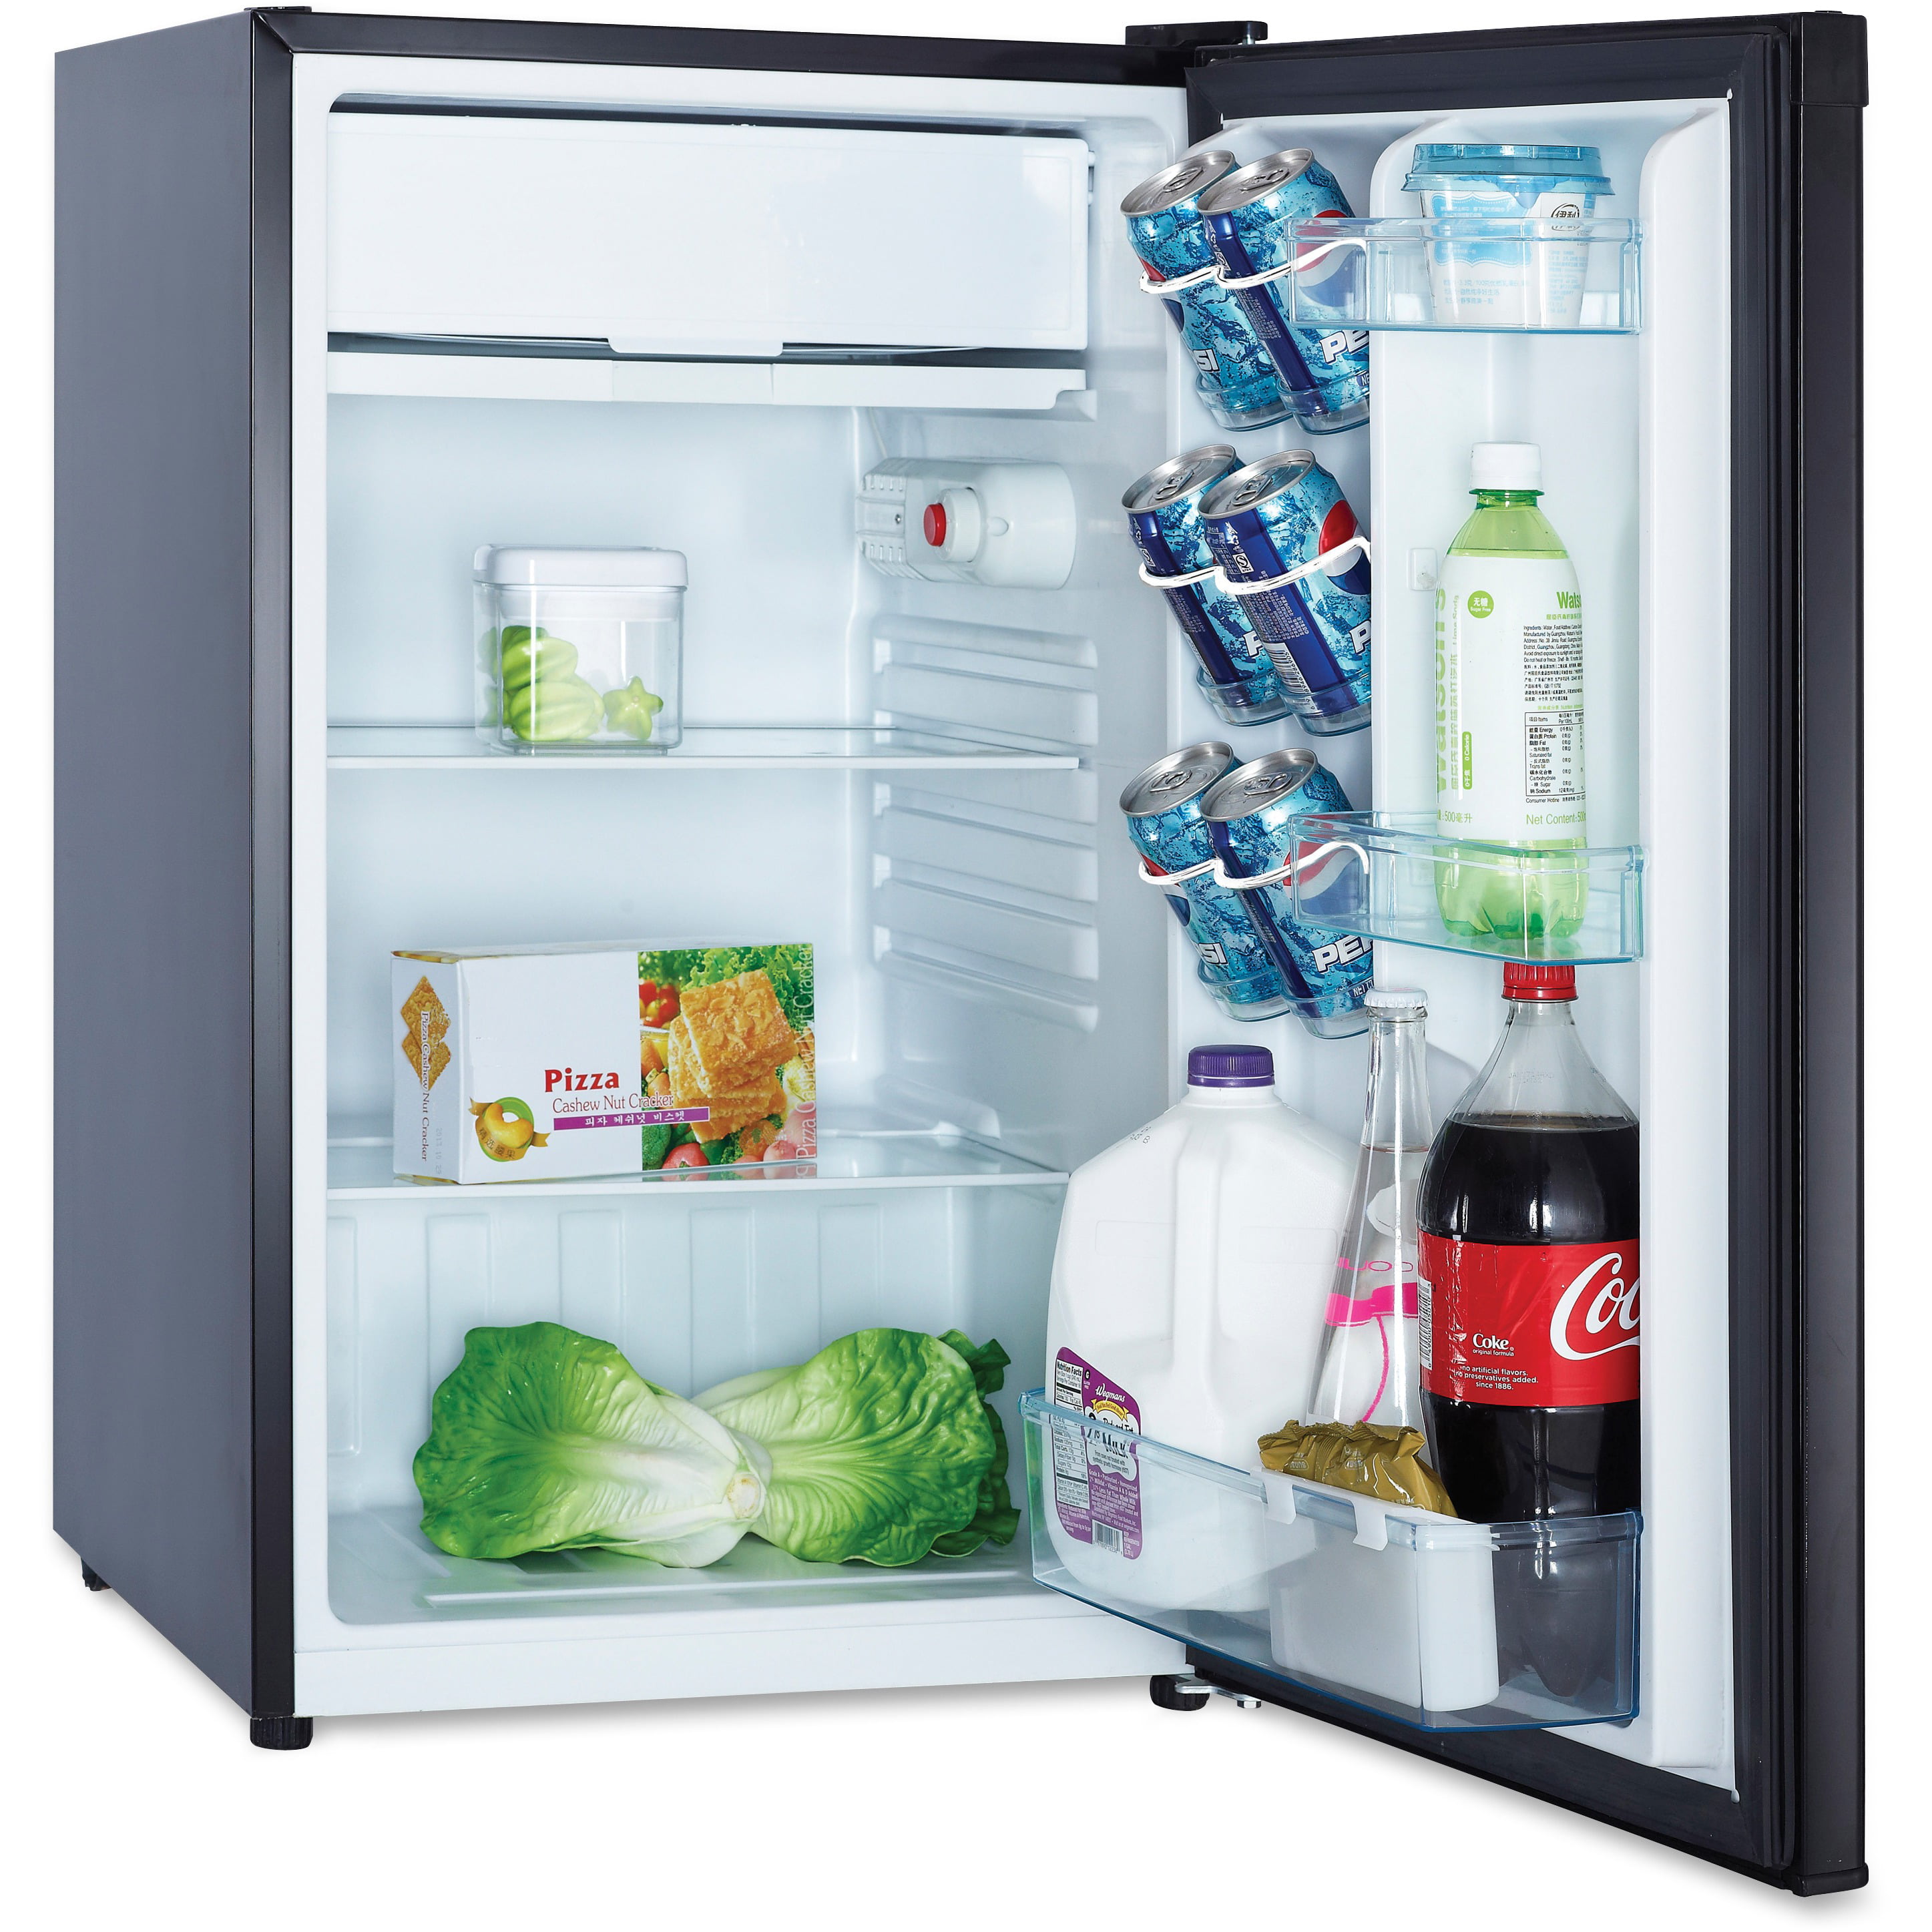 Мини холодильник с камерой. Мини холодильник Mini Fridge. Мини кухня с холодильником. Mini Fridge холодильник. Холодильник горизонтальный для дома.